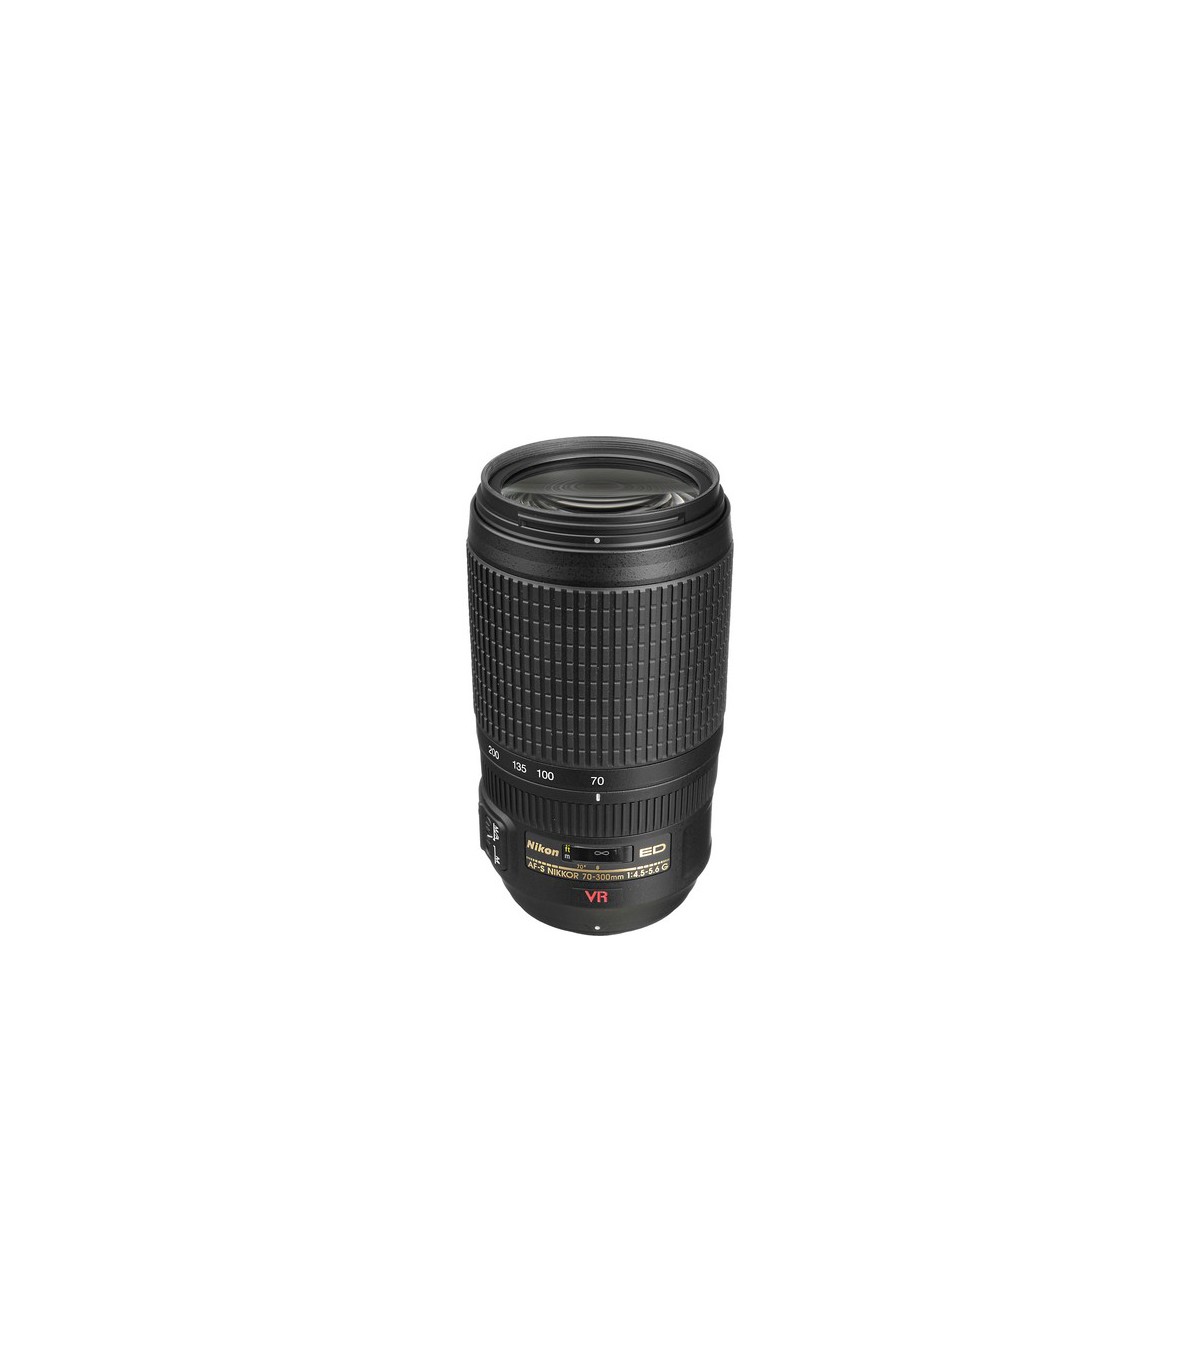 Nikon 70-300mm f/4.5-5.6 G ED VR Lens